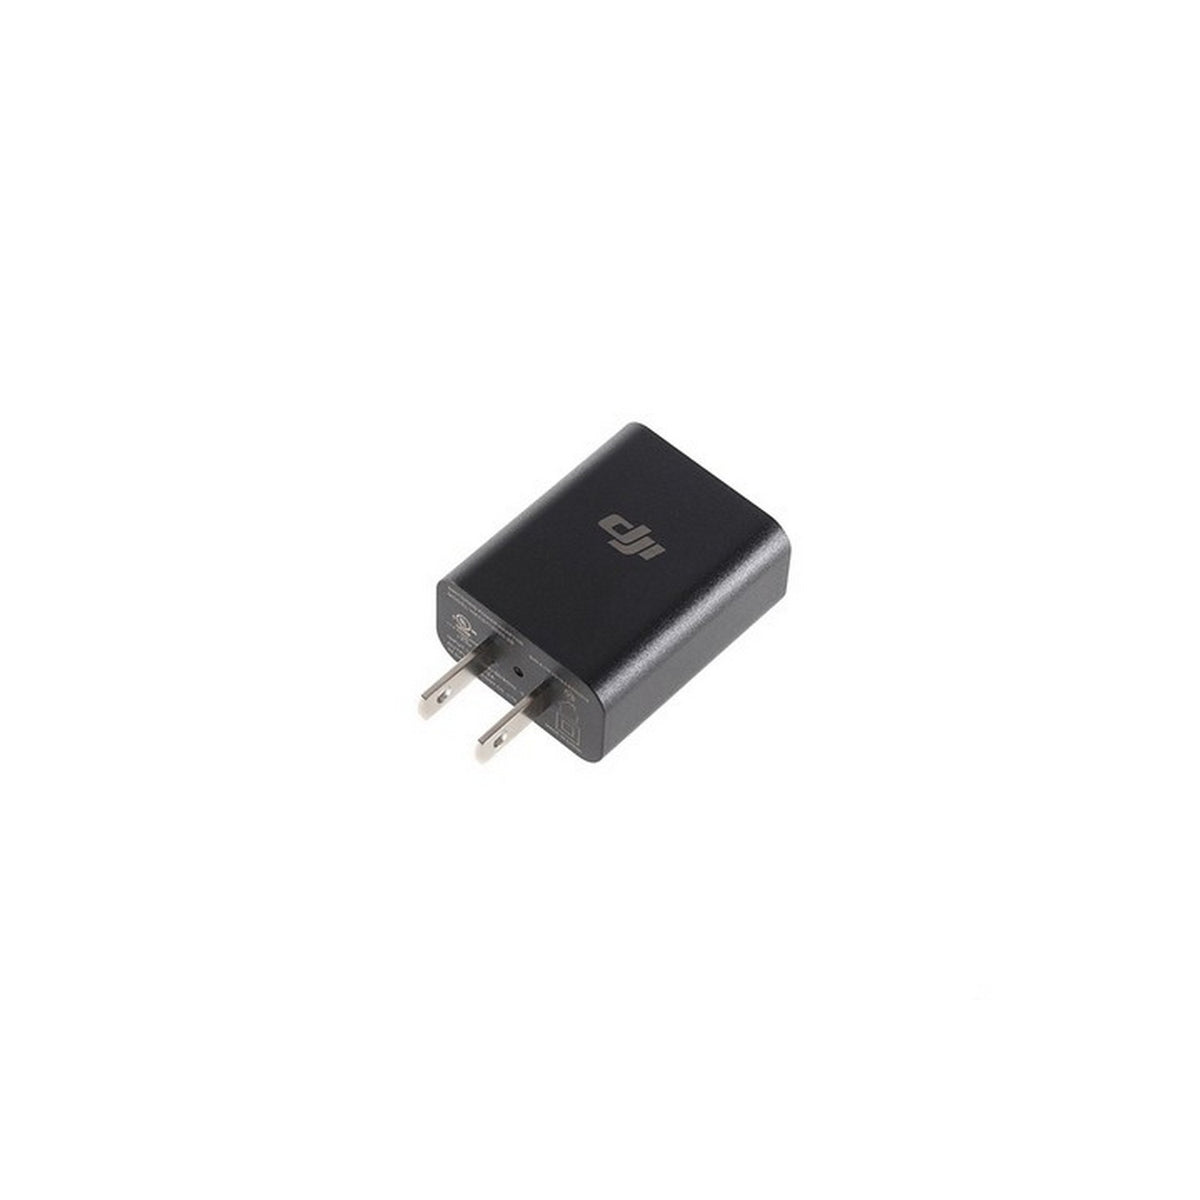 DJI Osmo Mobile 10W USB hálózati adapter (DJI Osmo)-0